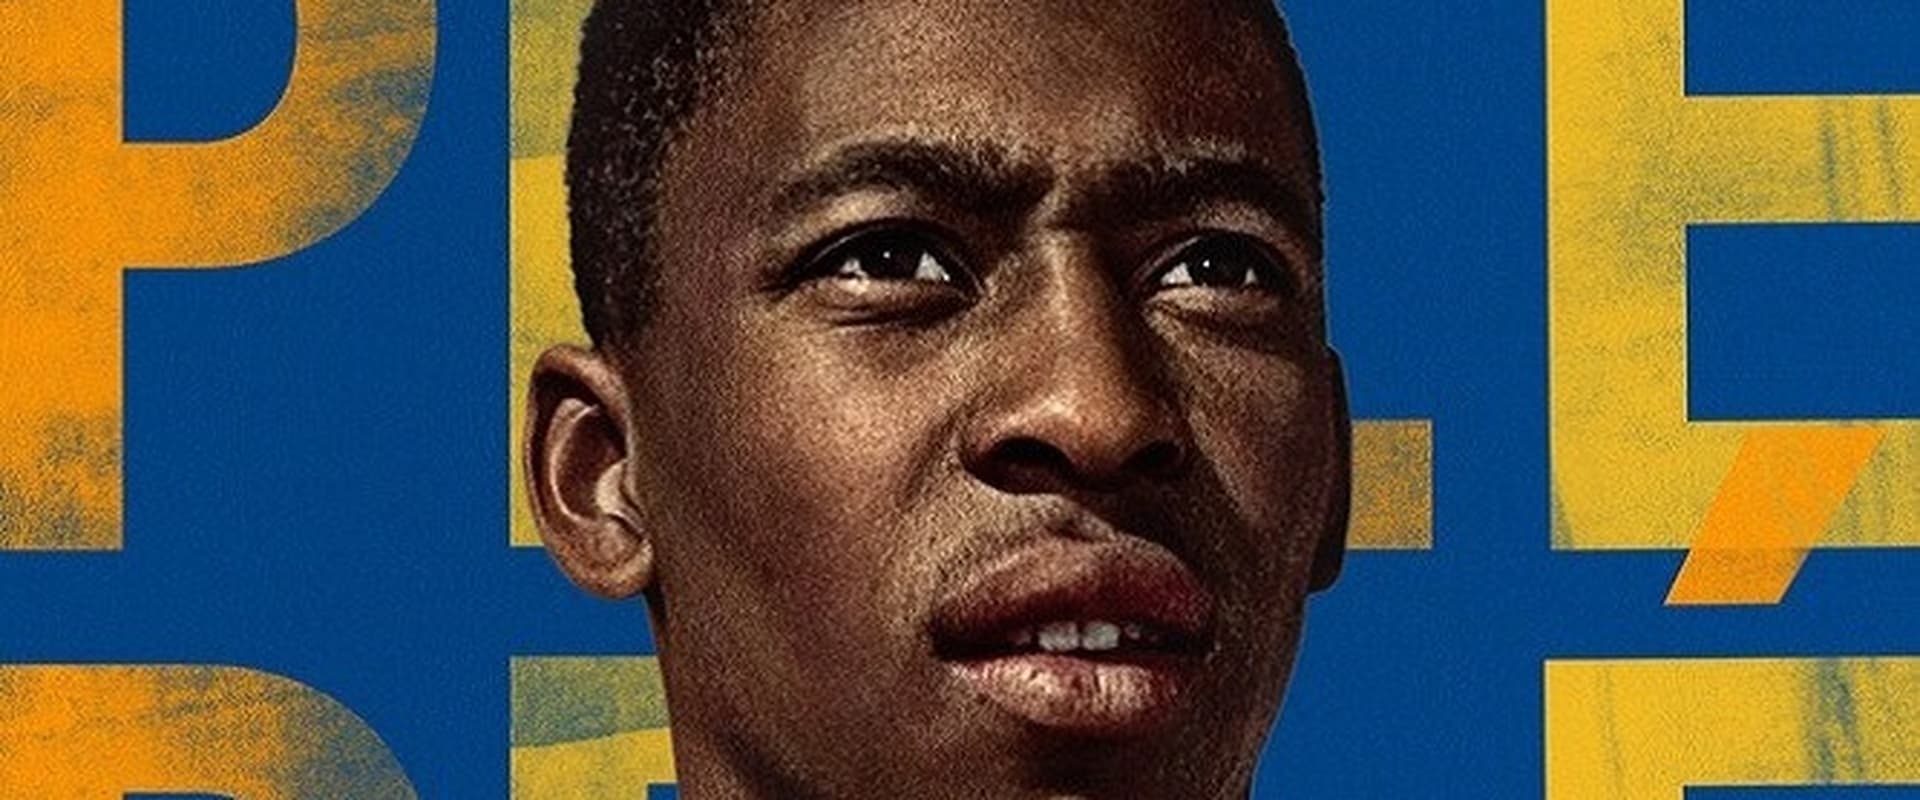 Pelé – Il re del calcio [HD] (2021)